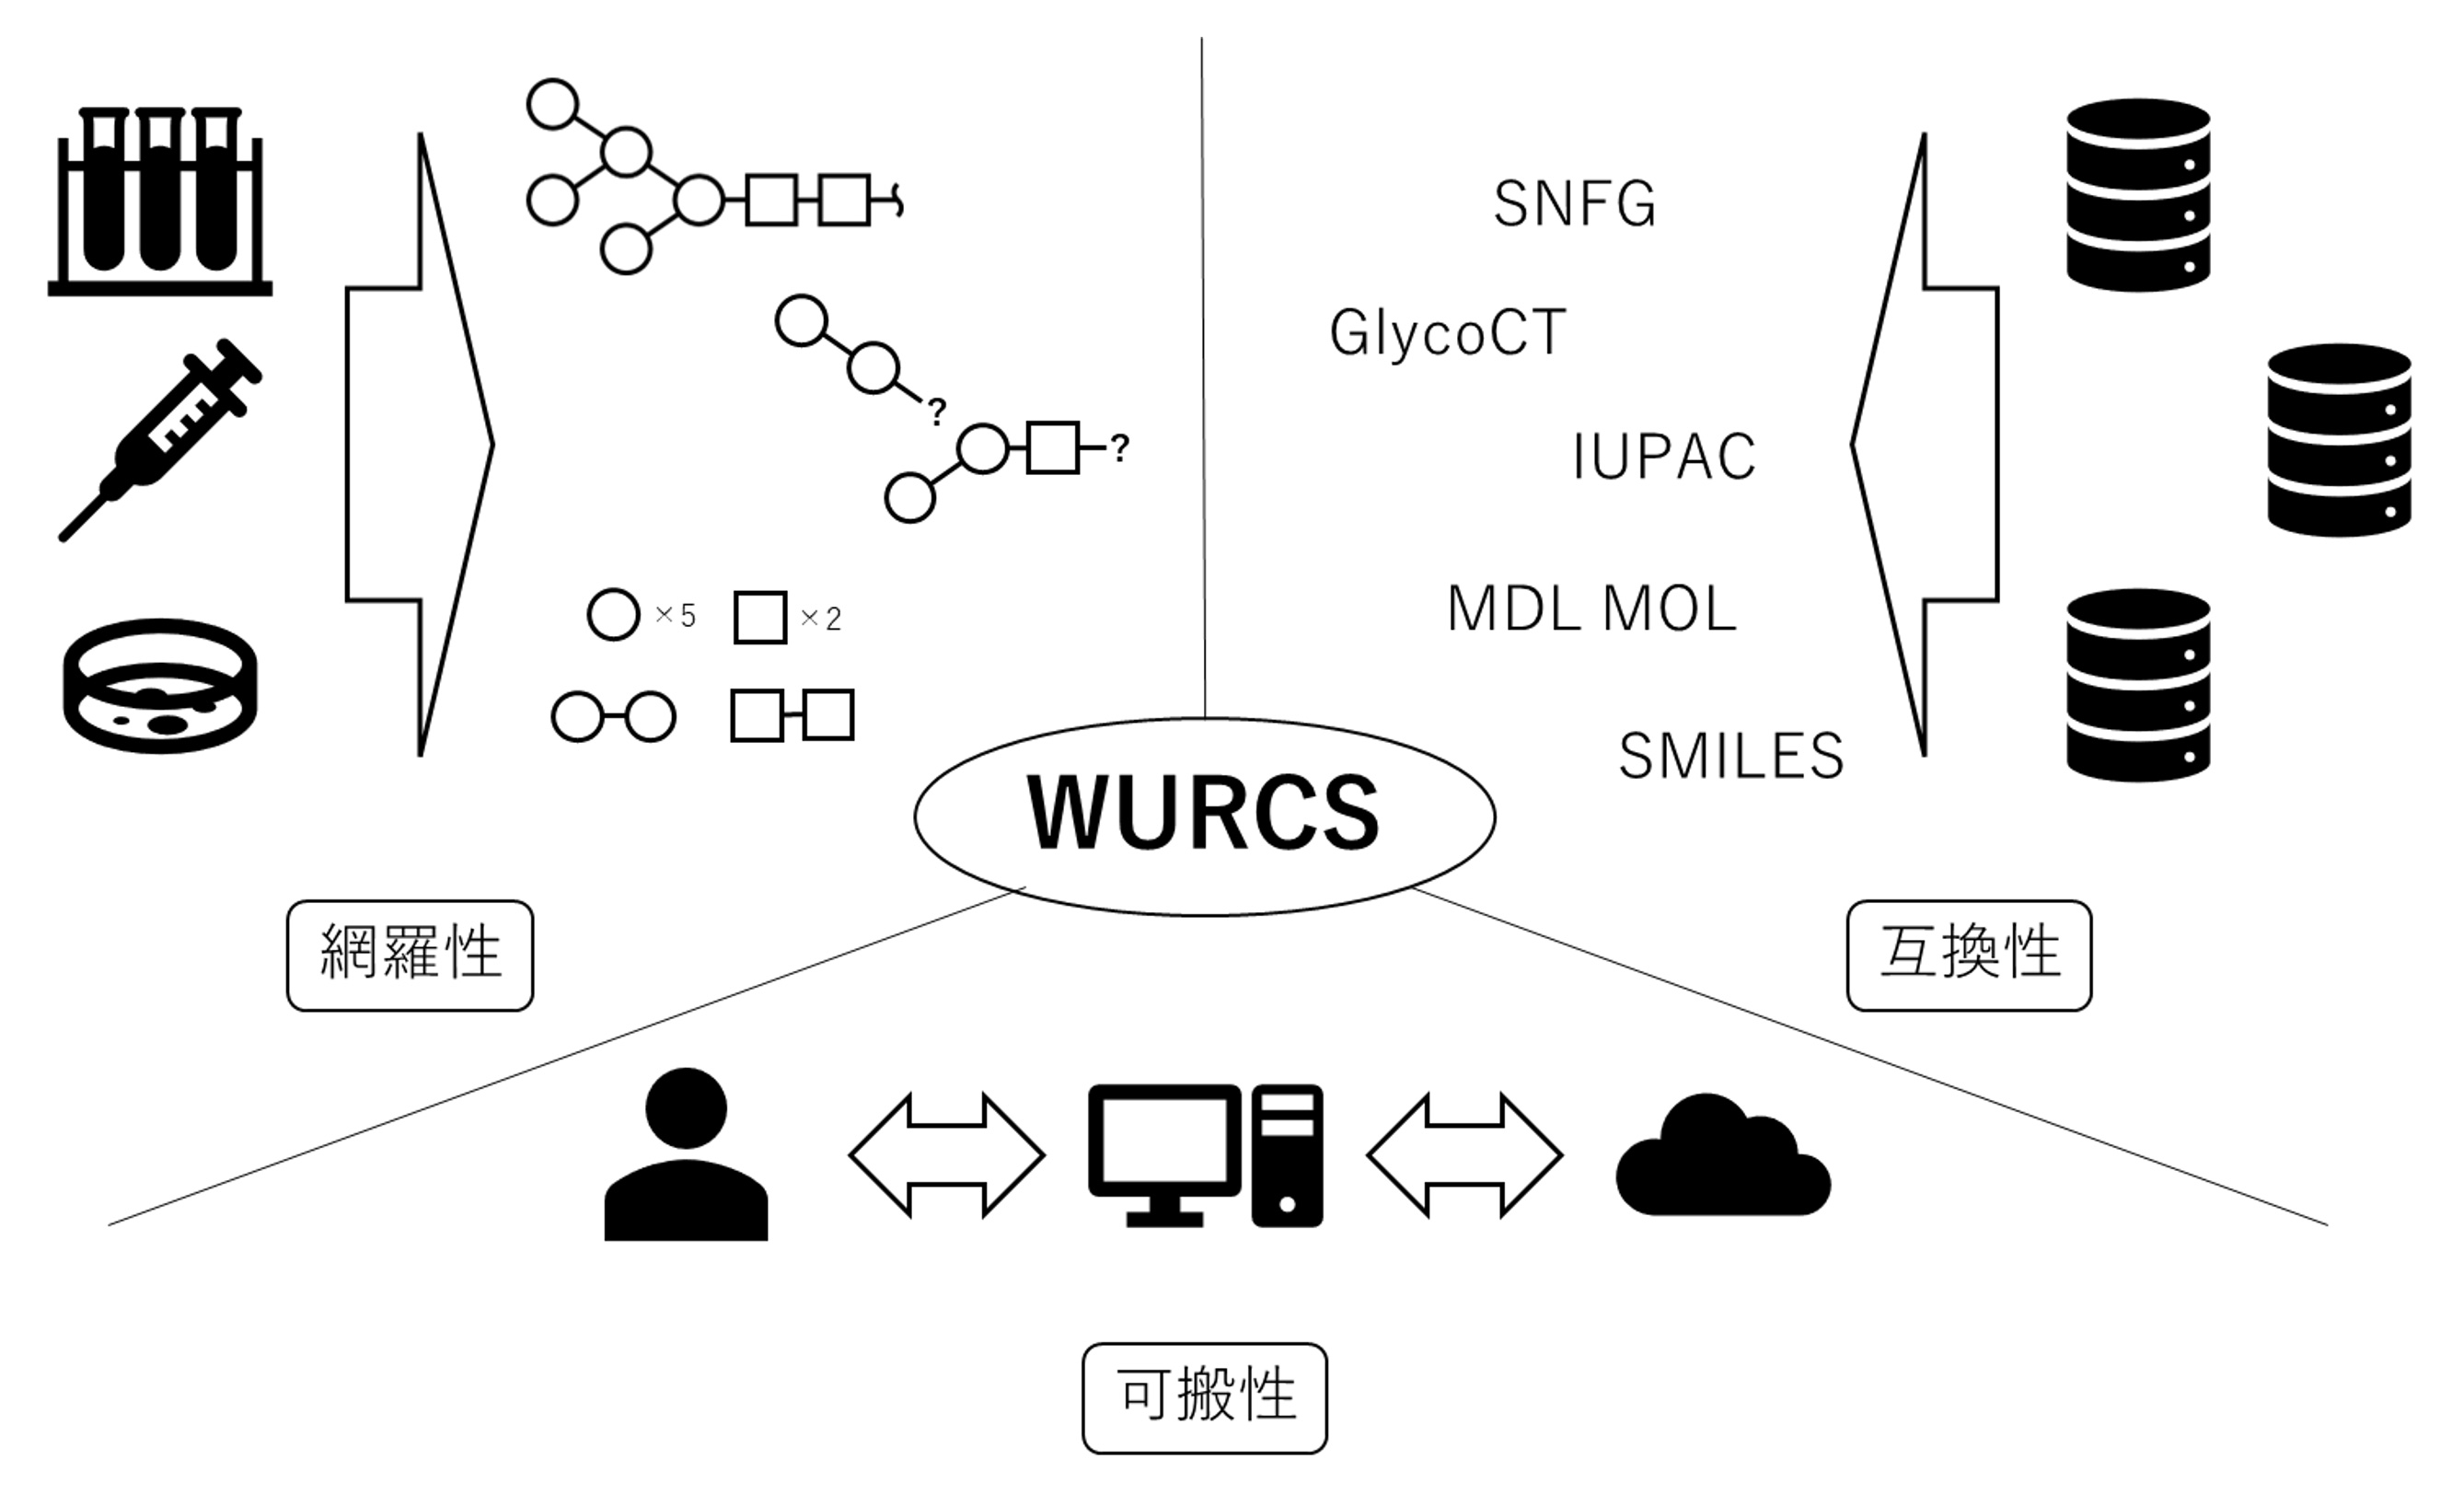 糖鎖構造表記法WURCS